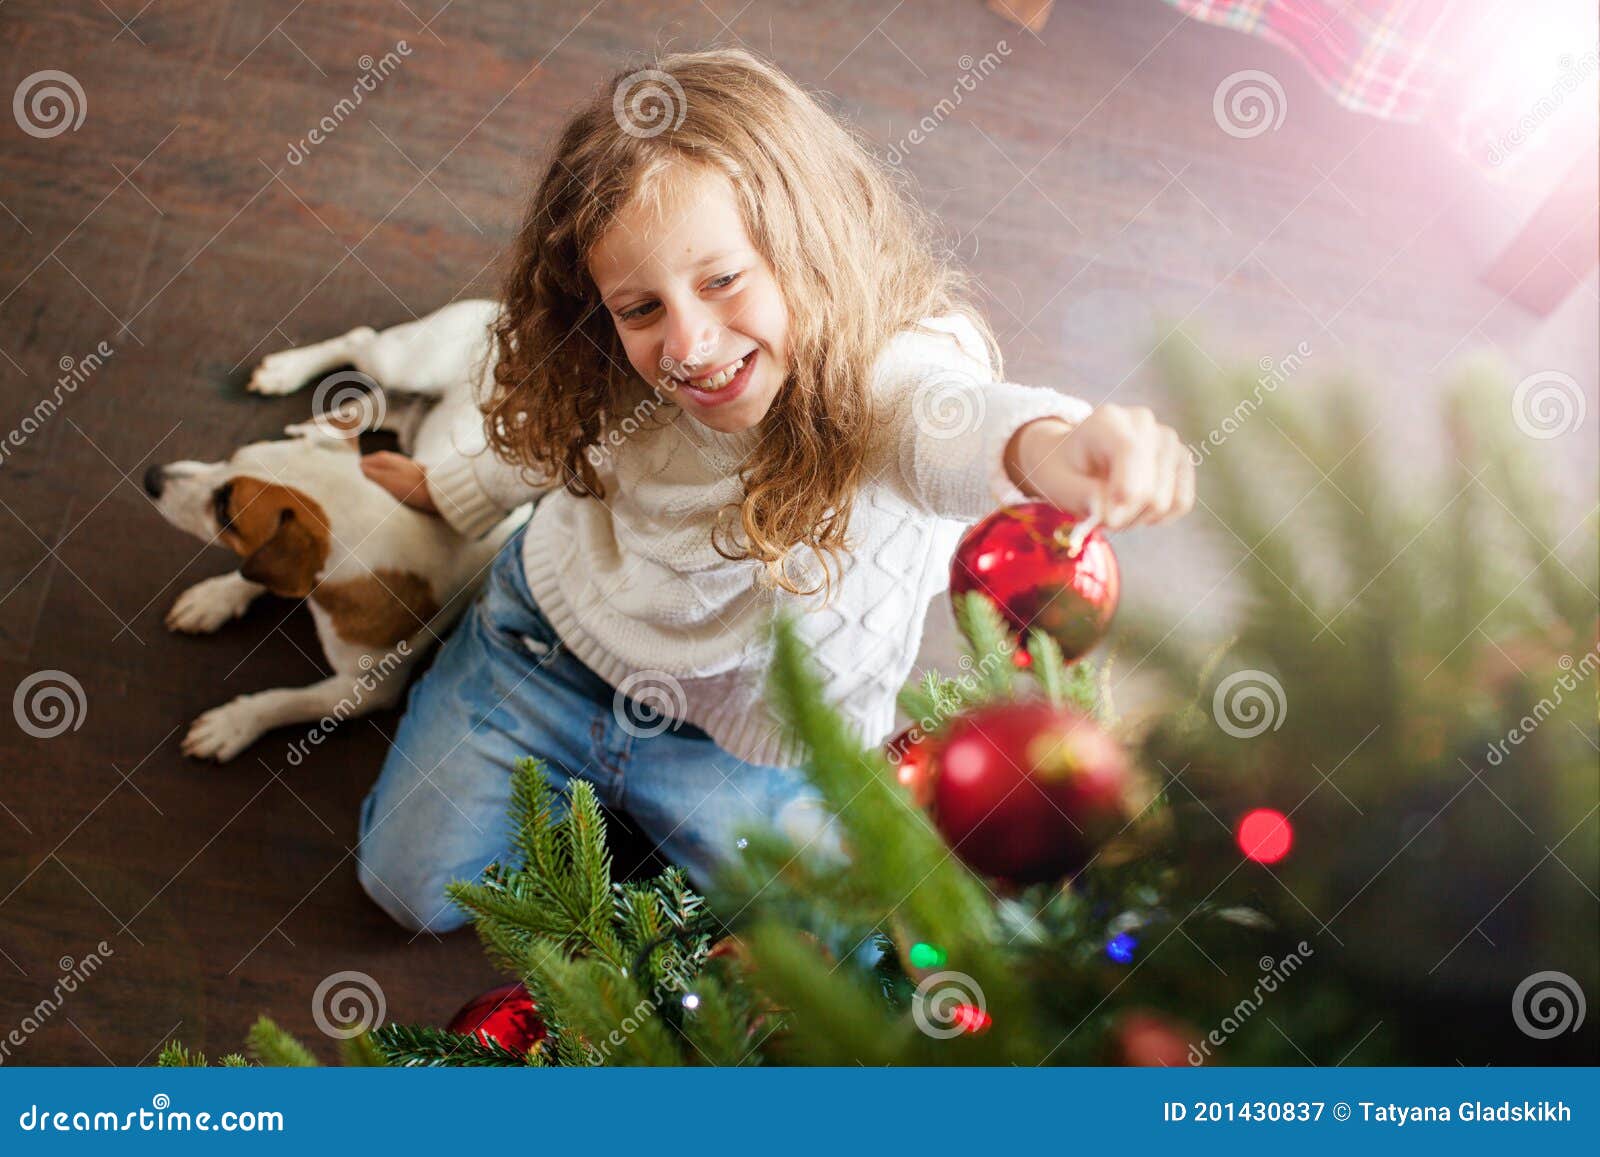 Child Decoration Christmas Tree Stock Image - Image of celebration ...